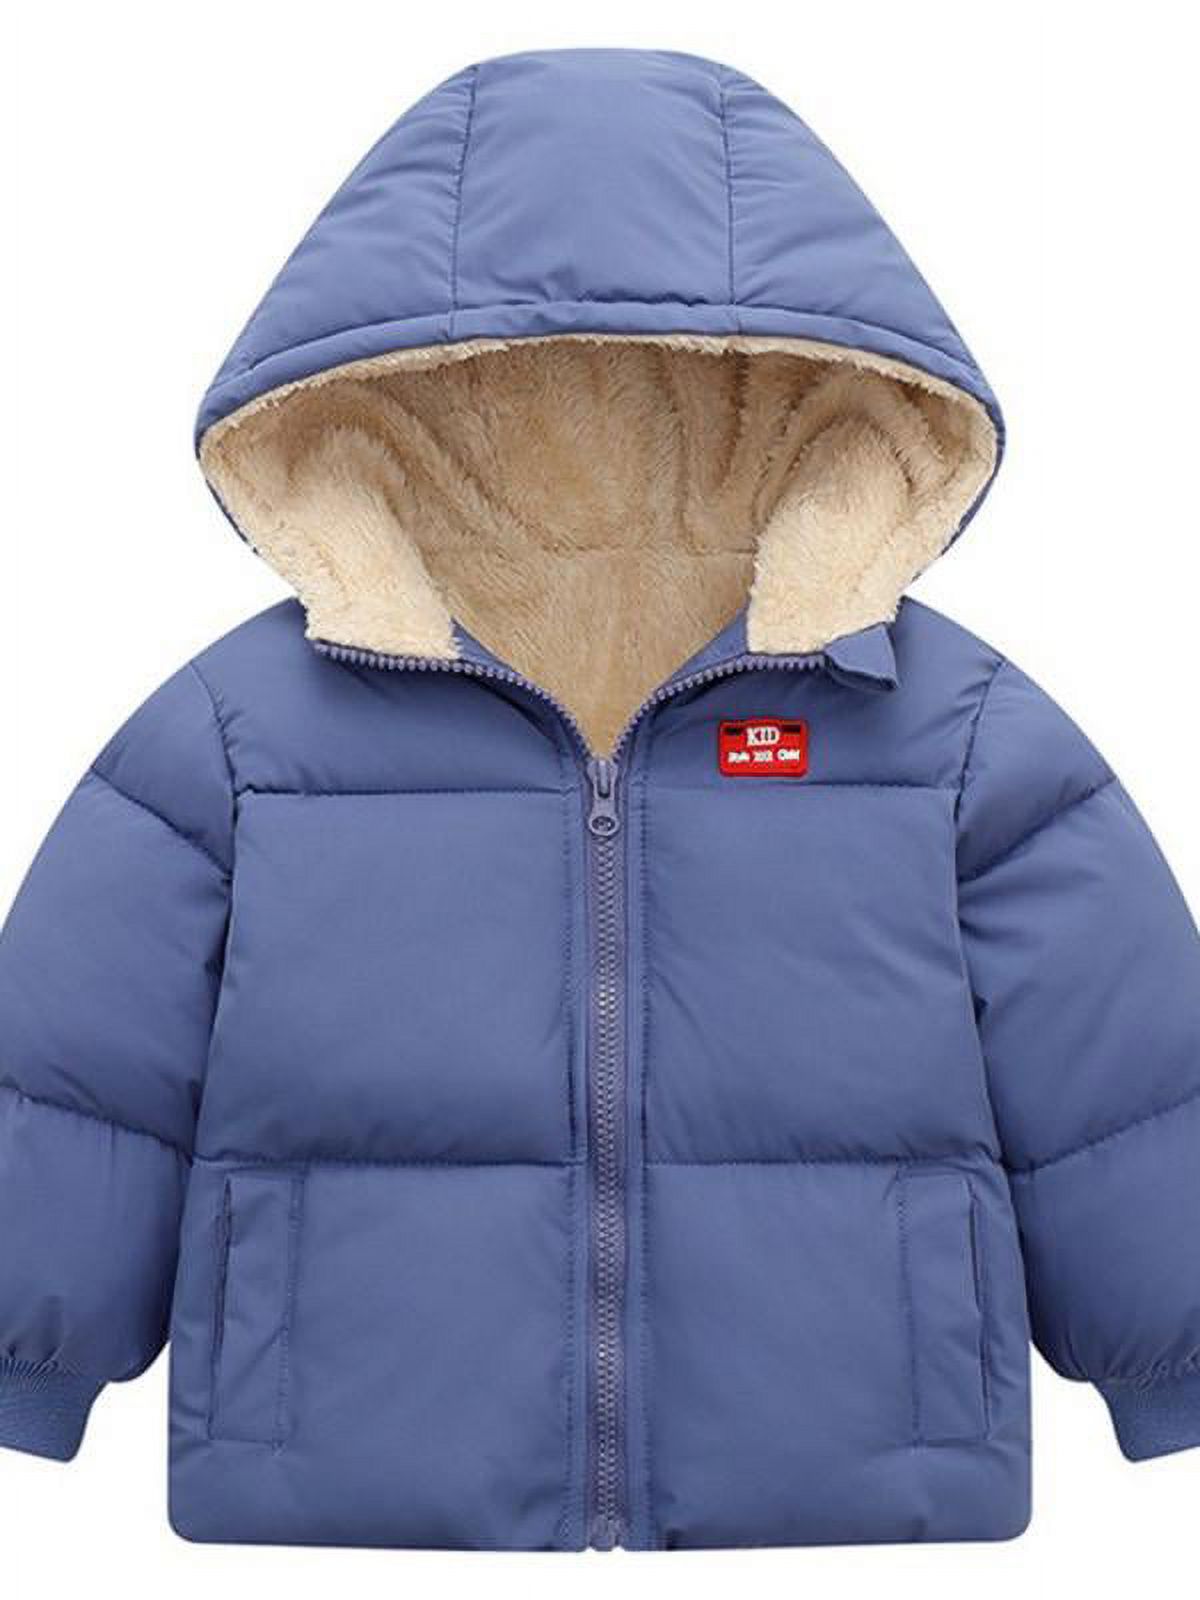 Topumt Boys Girls Hooded Down Jacket Winter Warm Fleece Coat Windproof Zipper Puffer Outerwear 1T-6T - image 1 of 3